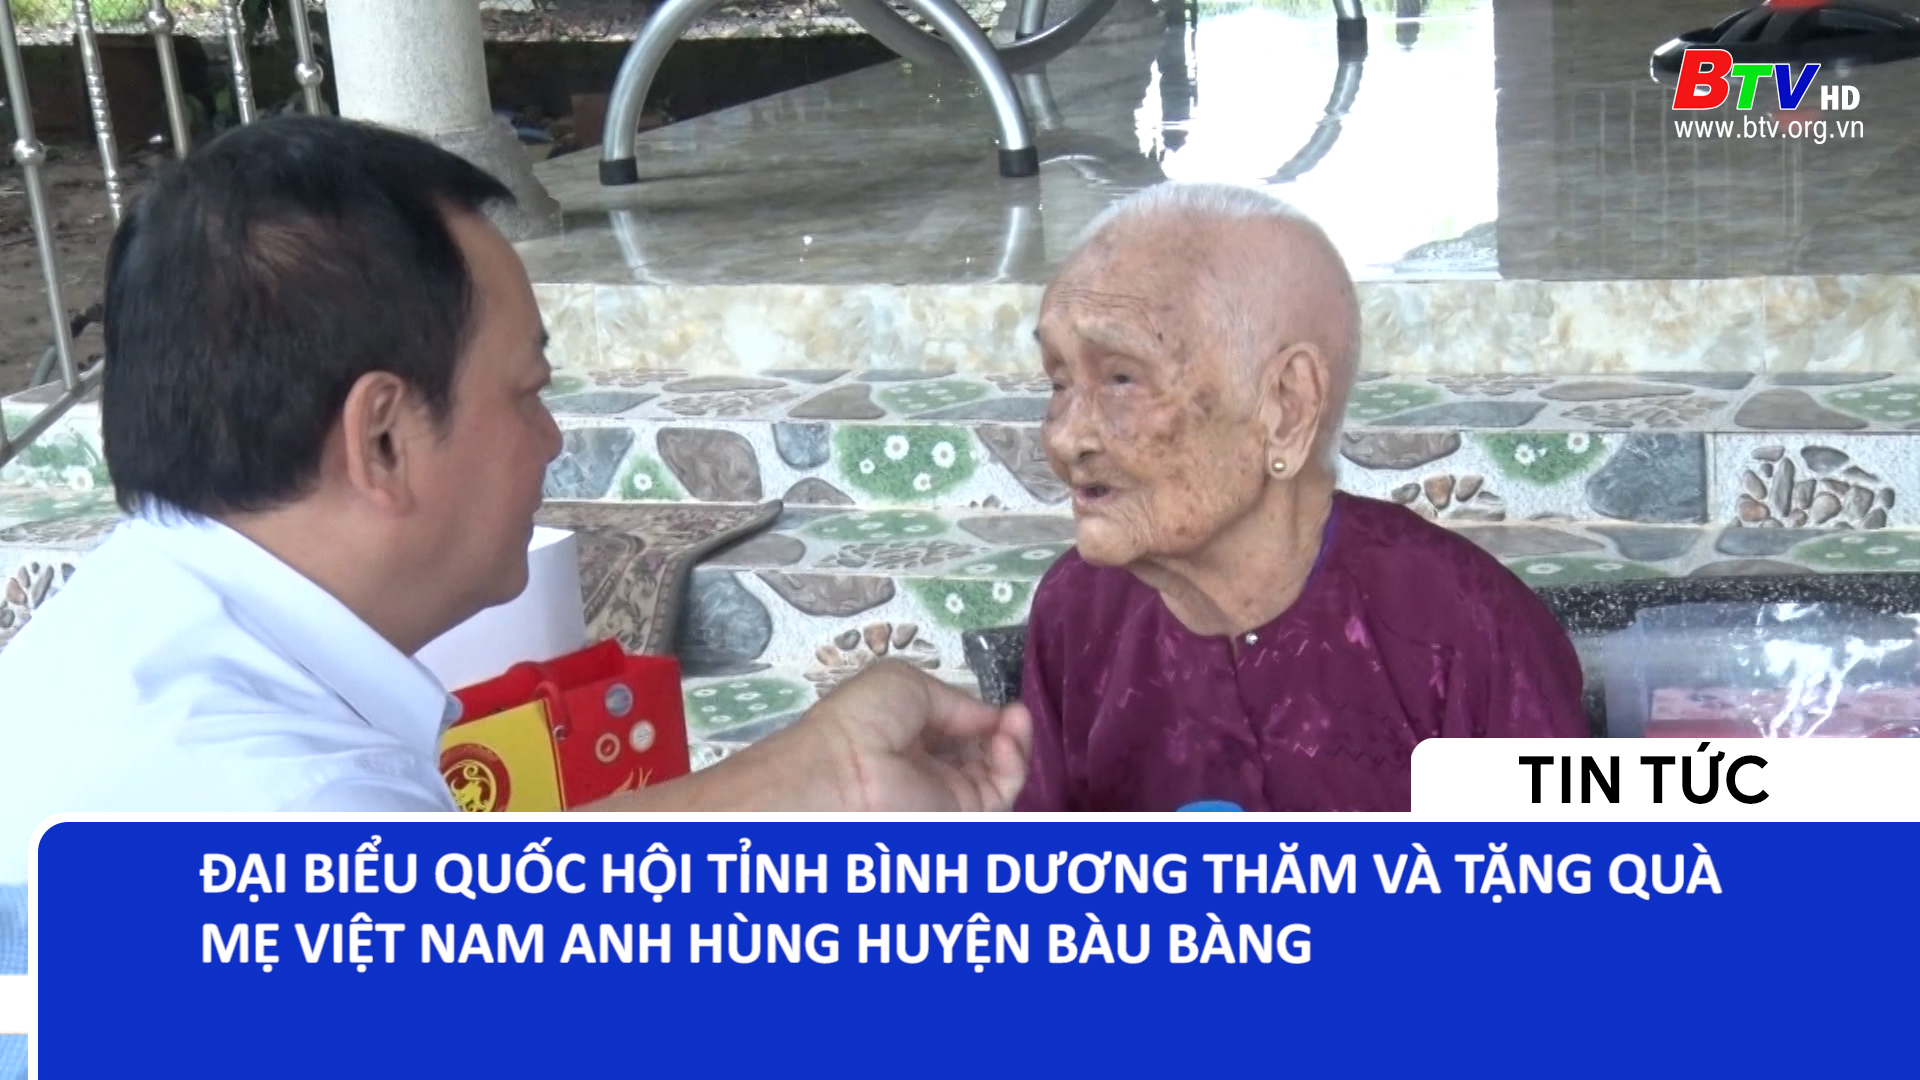 Đại biểu Quốc hội tỉnh Bình Dương thăm và tặng quà mẹ Việt Nam Anh hùng huyện Bàu Bàng